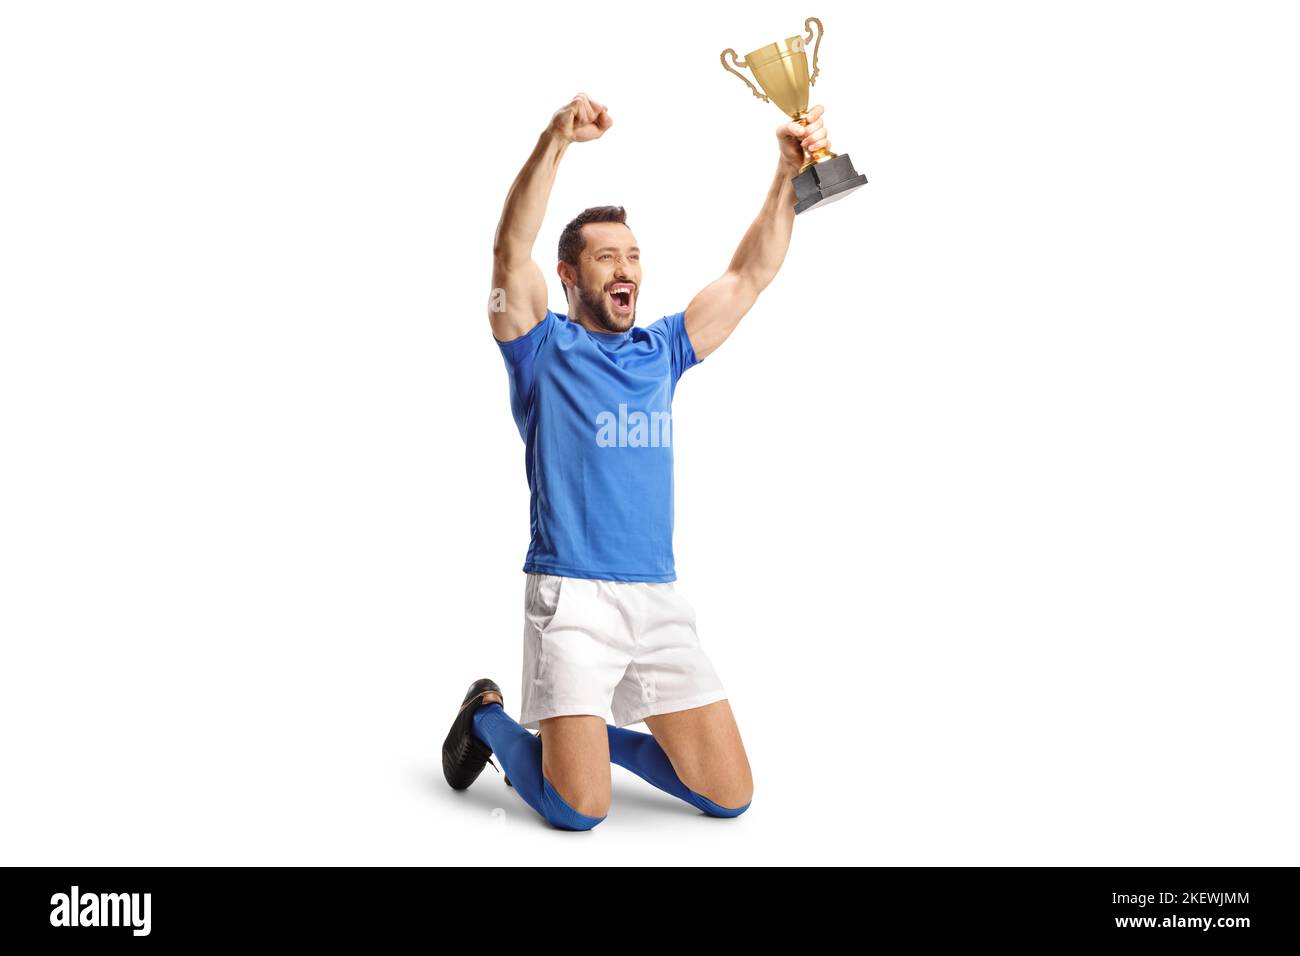 Campione di calcio che tiene un trofeo e si inginocchia isolato su sfondo bianco Foto Stock